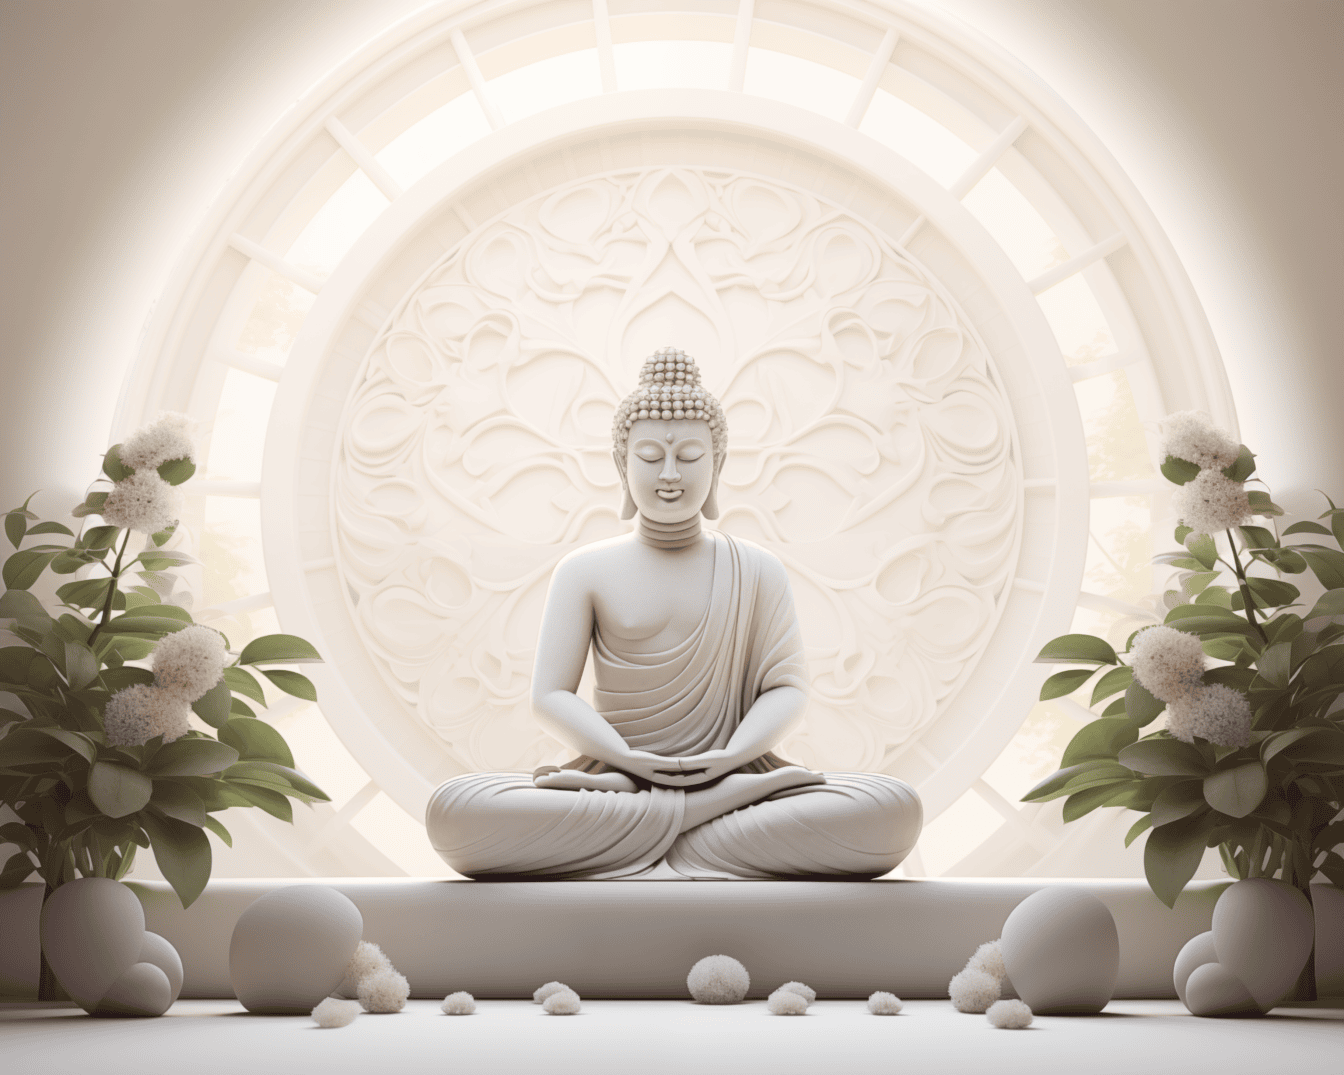 Patung Buddha putih megah duduk dalam posisi lotus dan bermeditasi di samping bunga putih